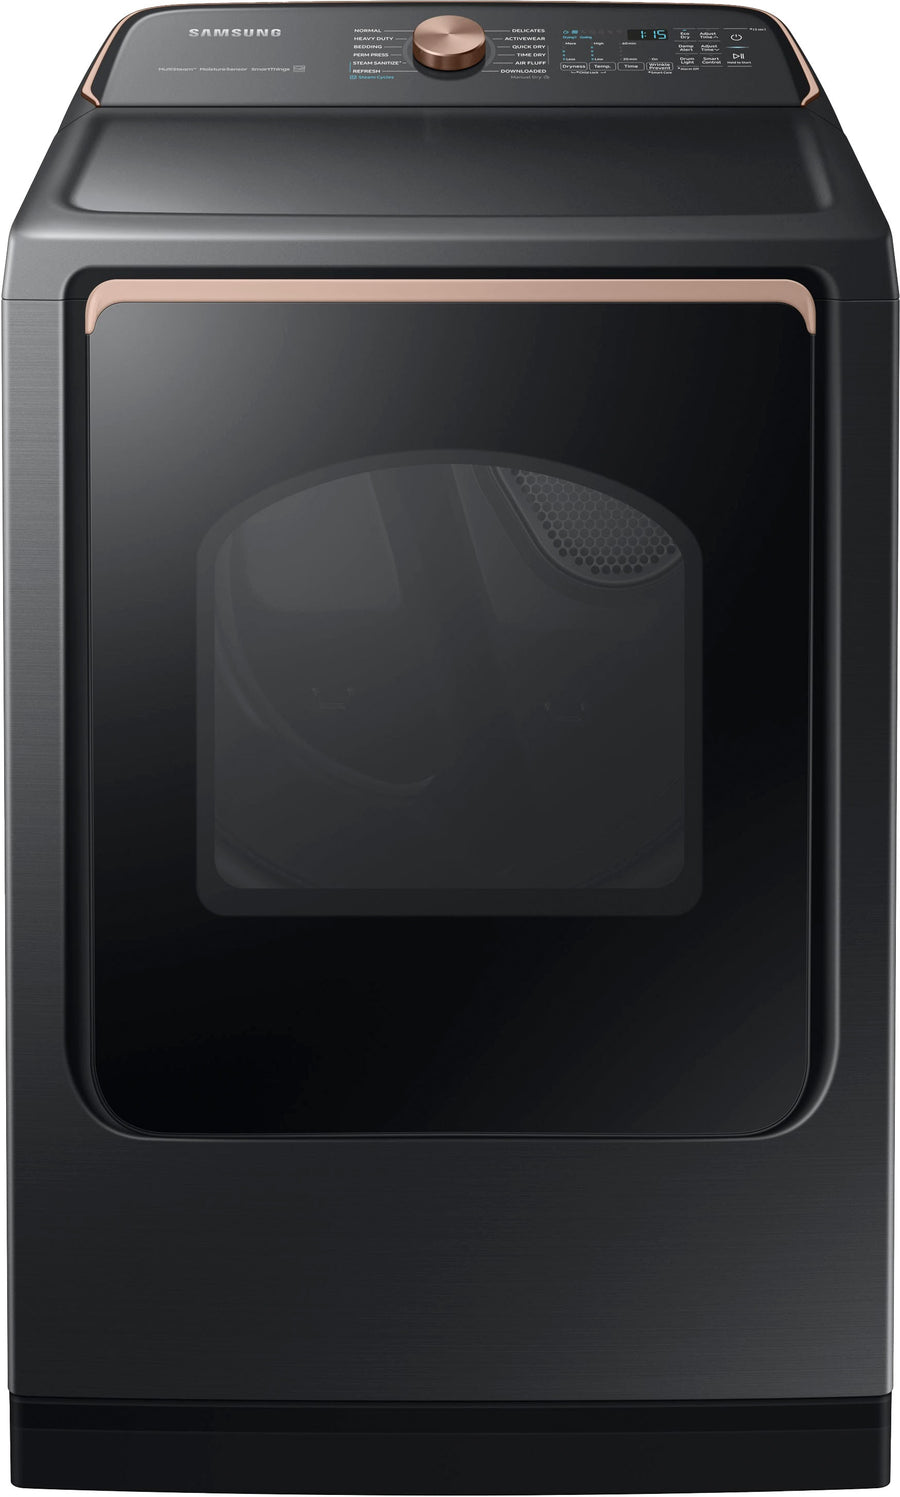 Samsung - 7.4 cu. ft. Smart Gas Dryer with Steam Sanitize+ - Brushed black_0